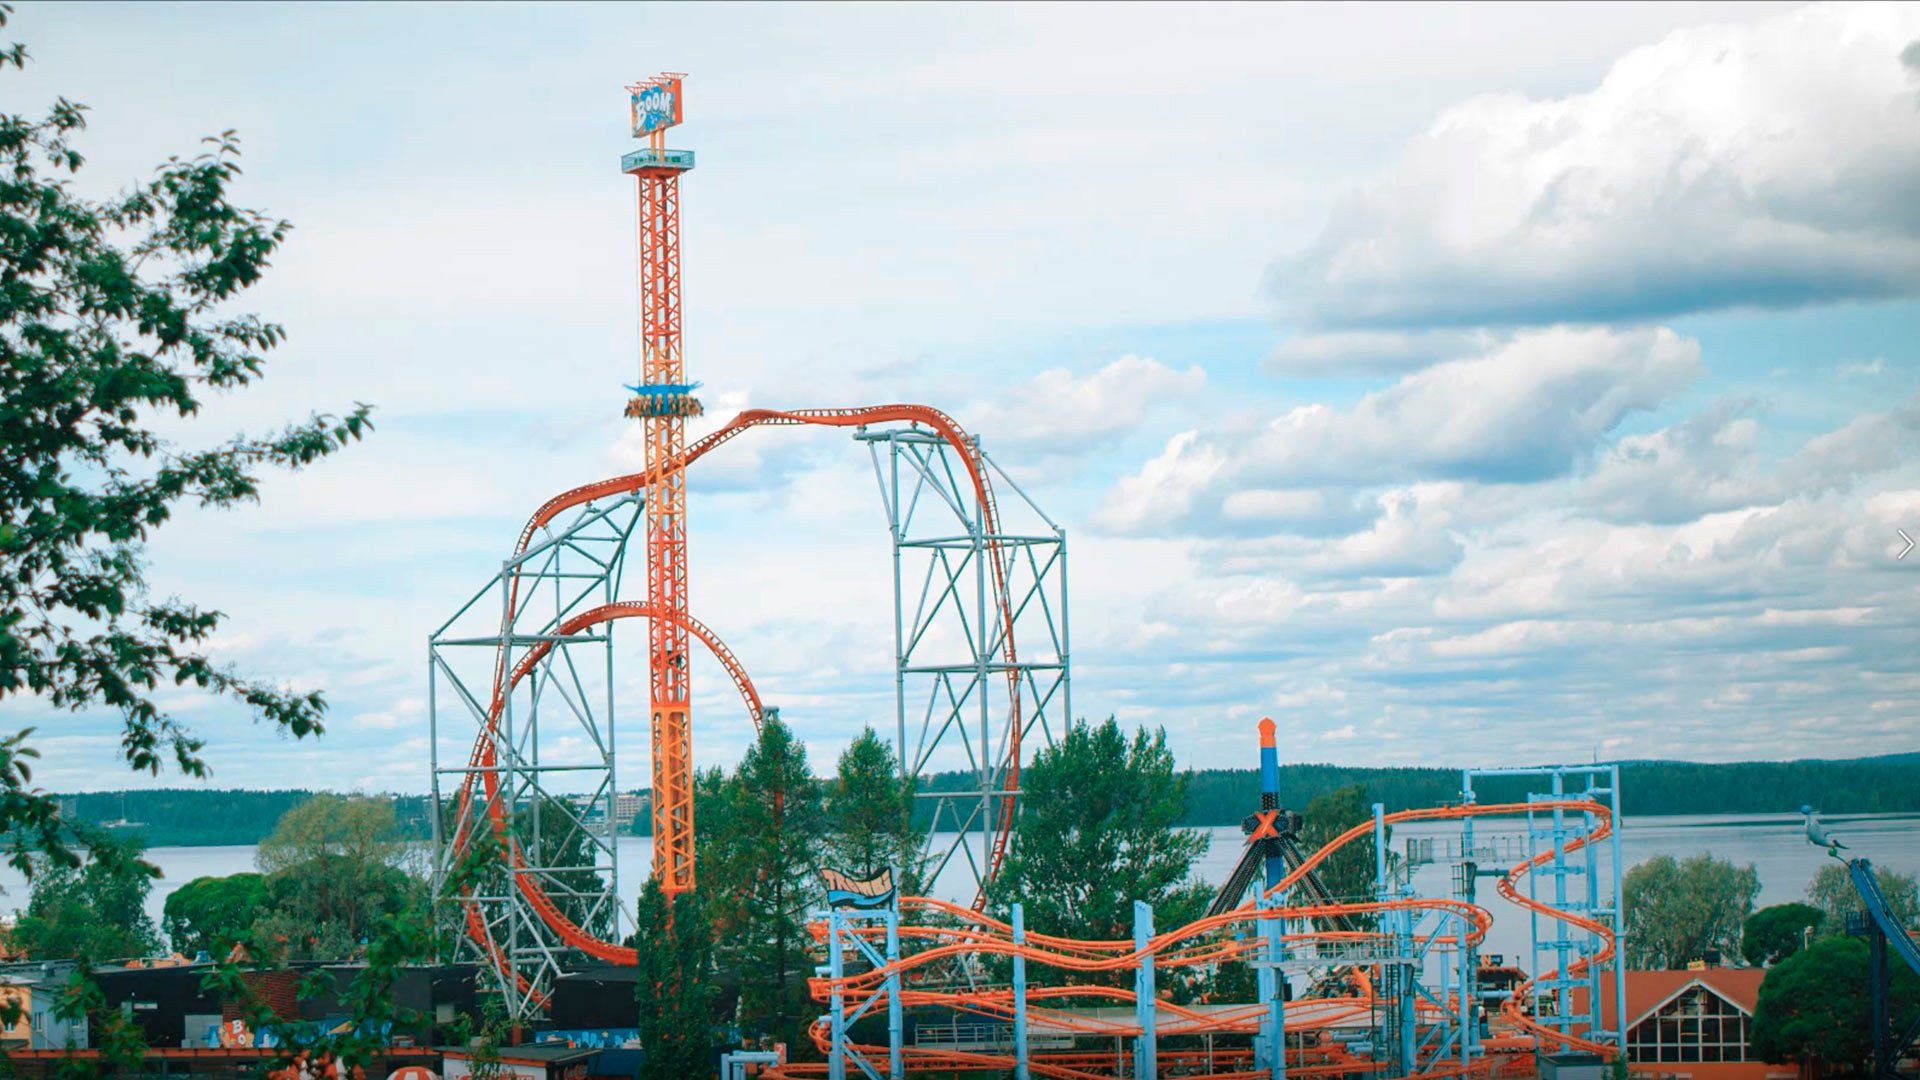 Amusement park equipment Boom, Särkänniemi, Tampere